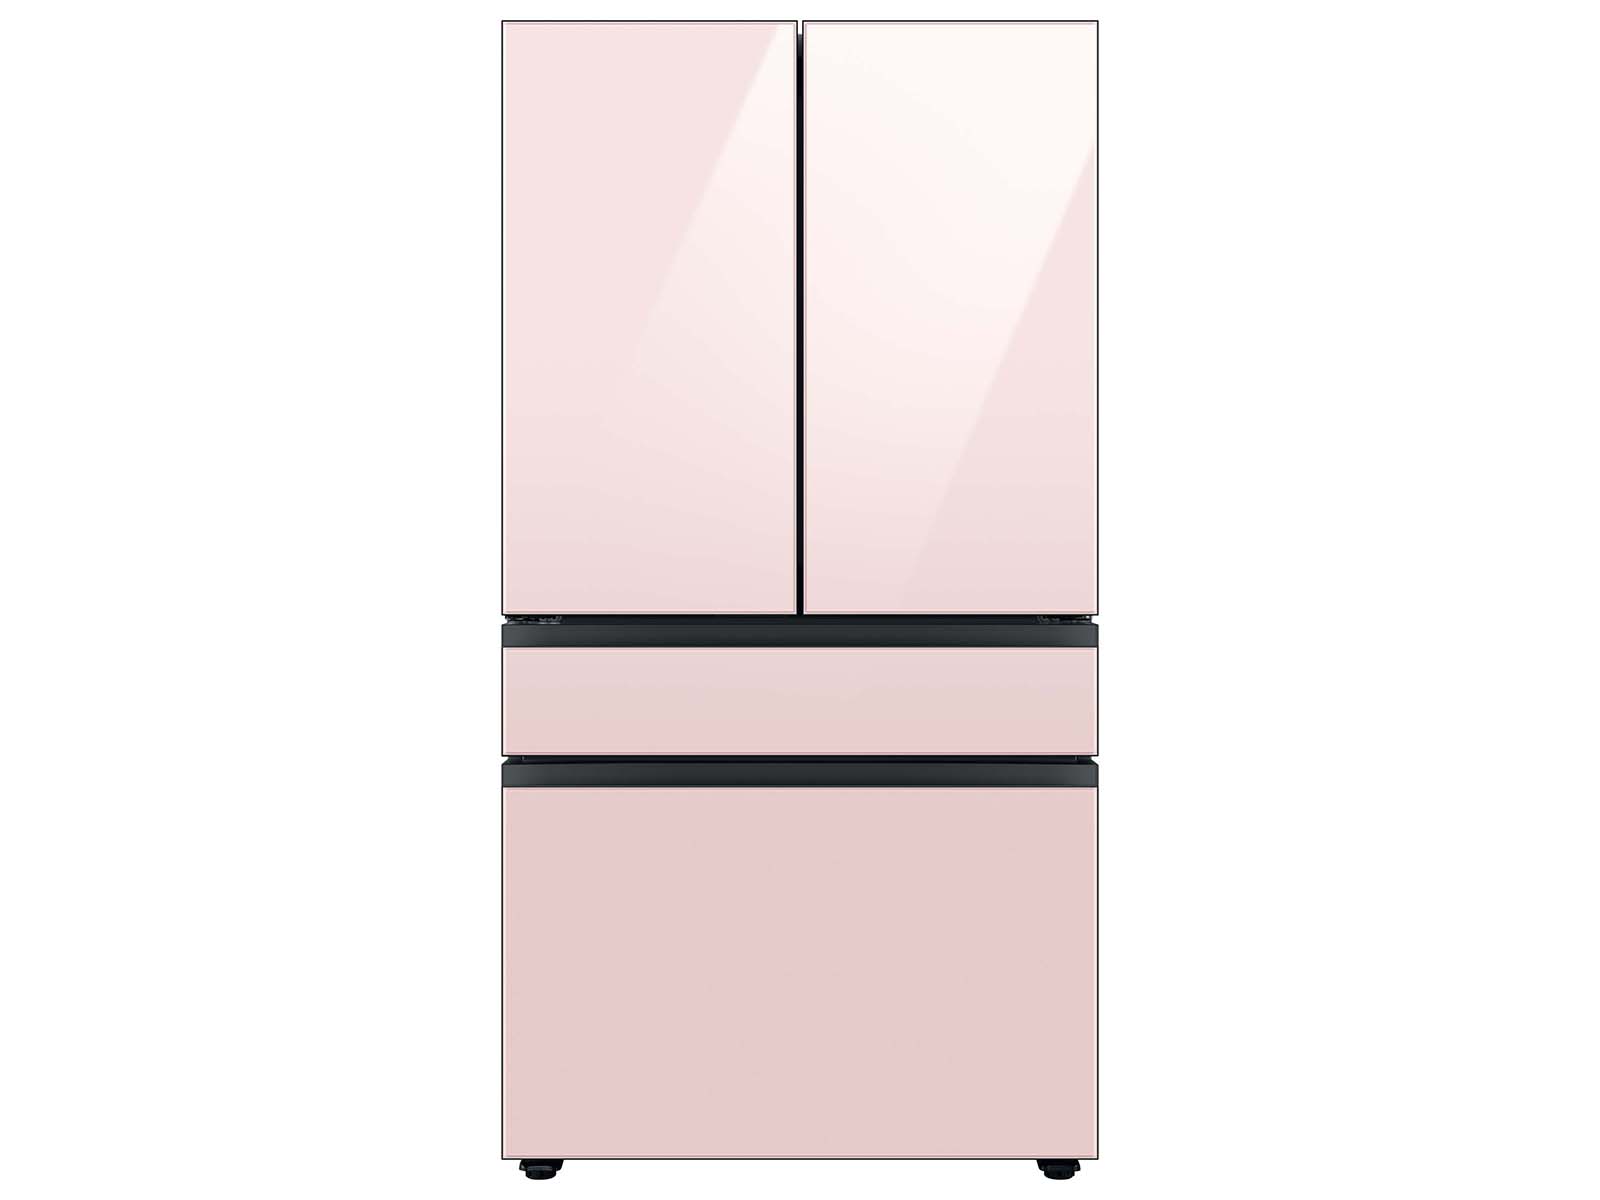 Bespoke 4-Door French Door Refrigerator (23 cu. ft.) with Customizable Door Panel Colors and Beverage Center&trade; in Rose Pink Glass